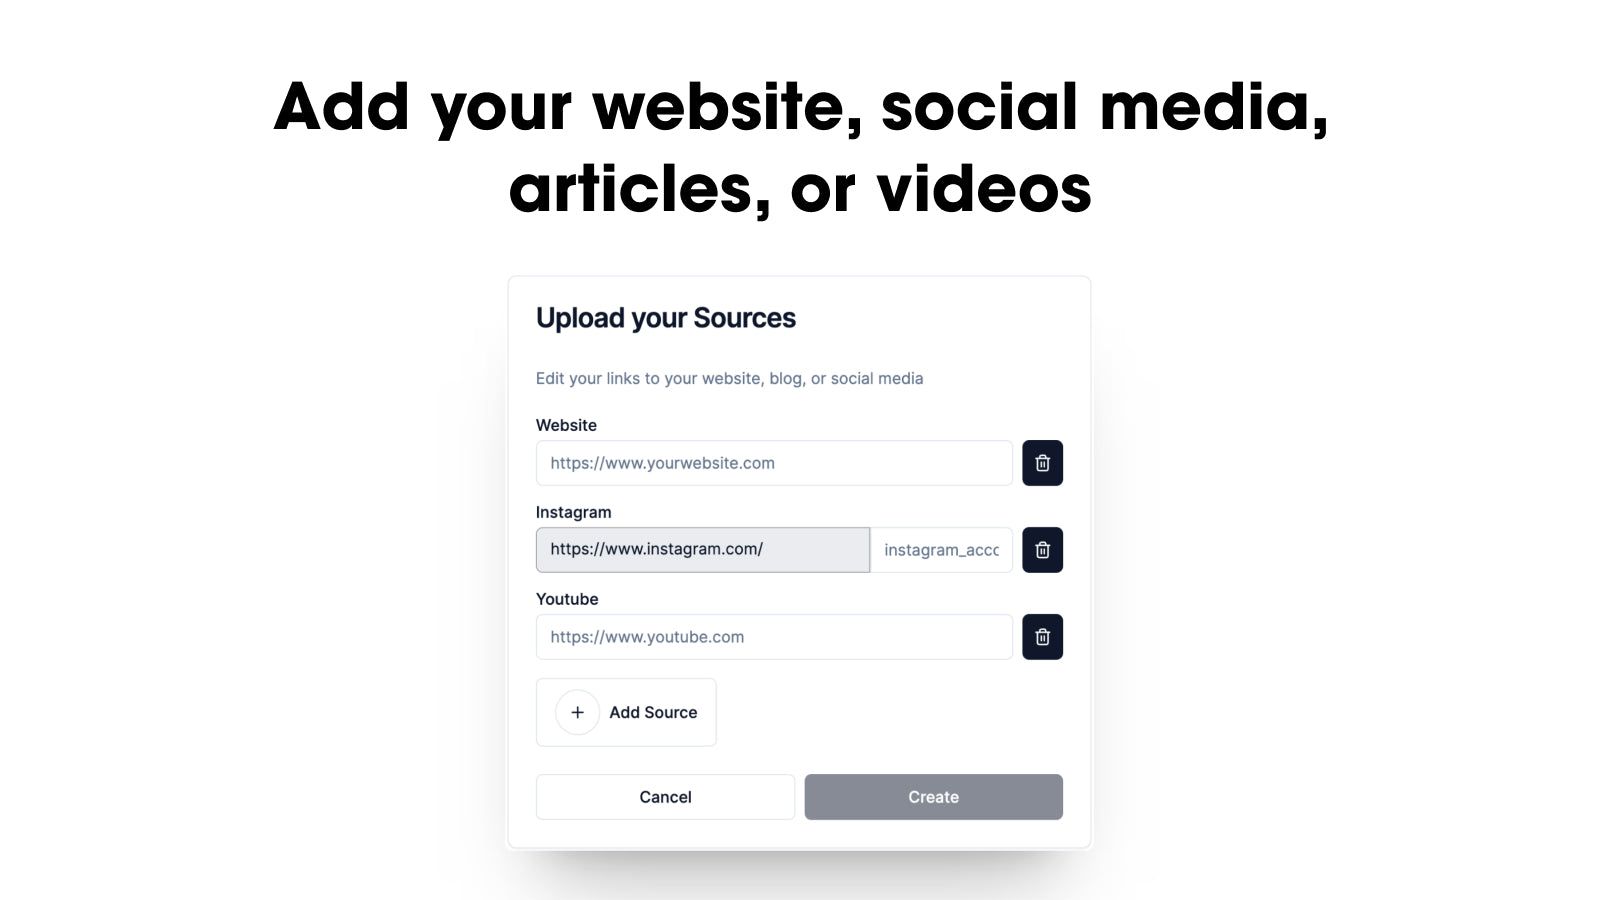 Add various content types: website, social media, videos